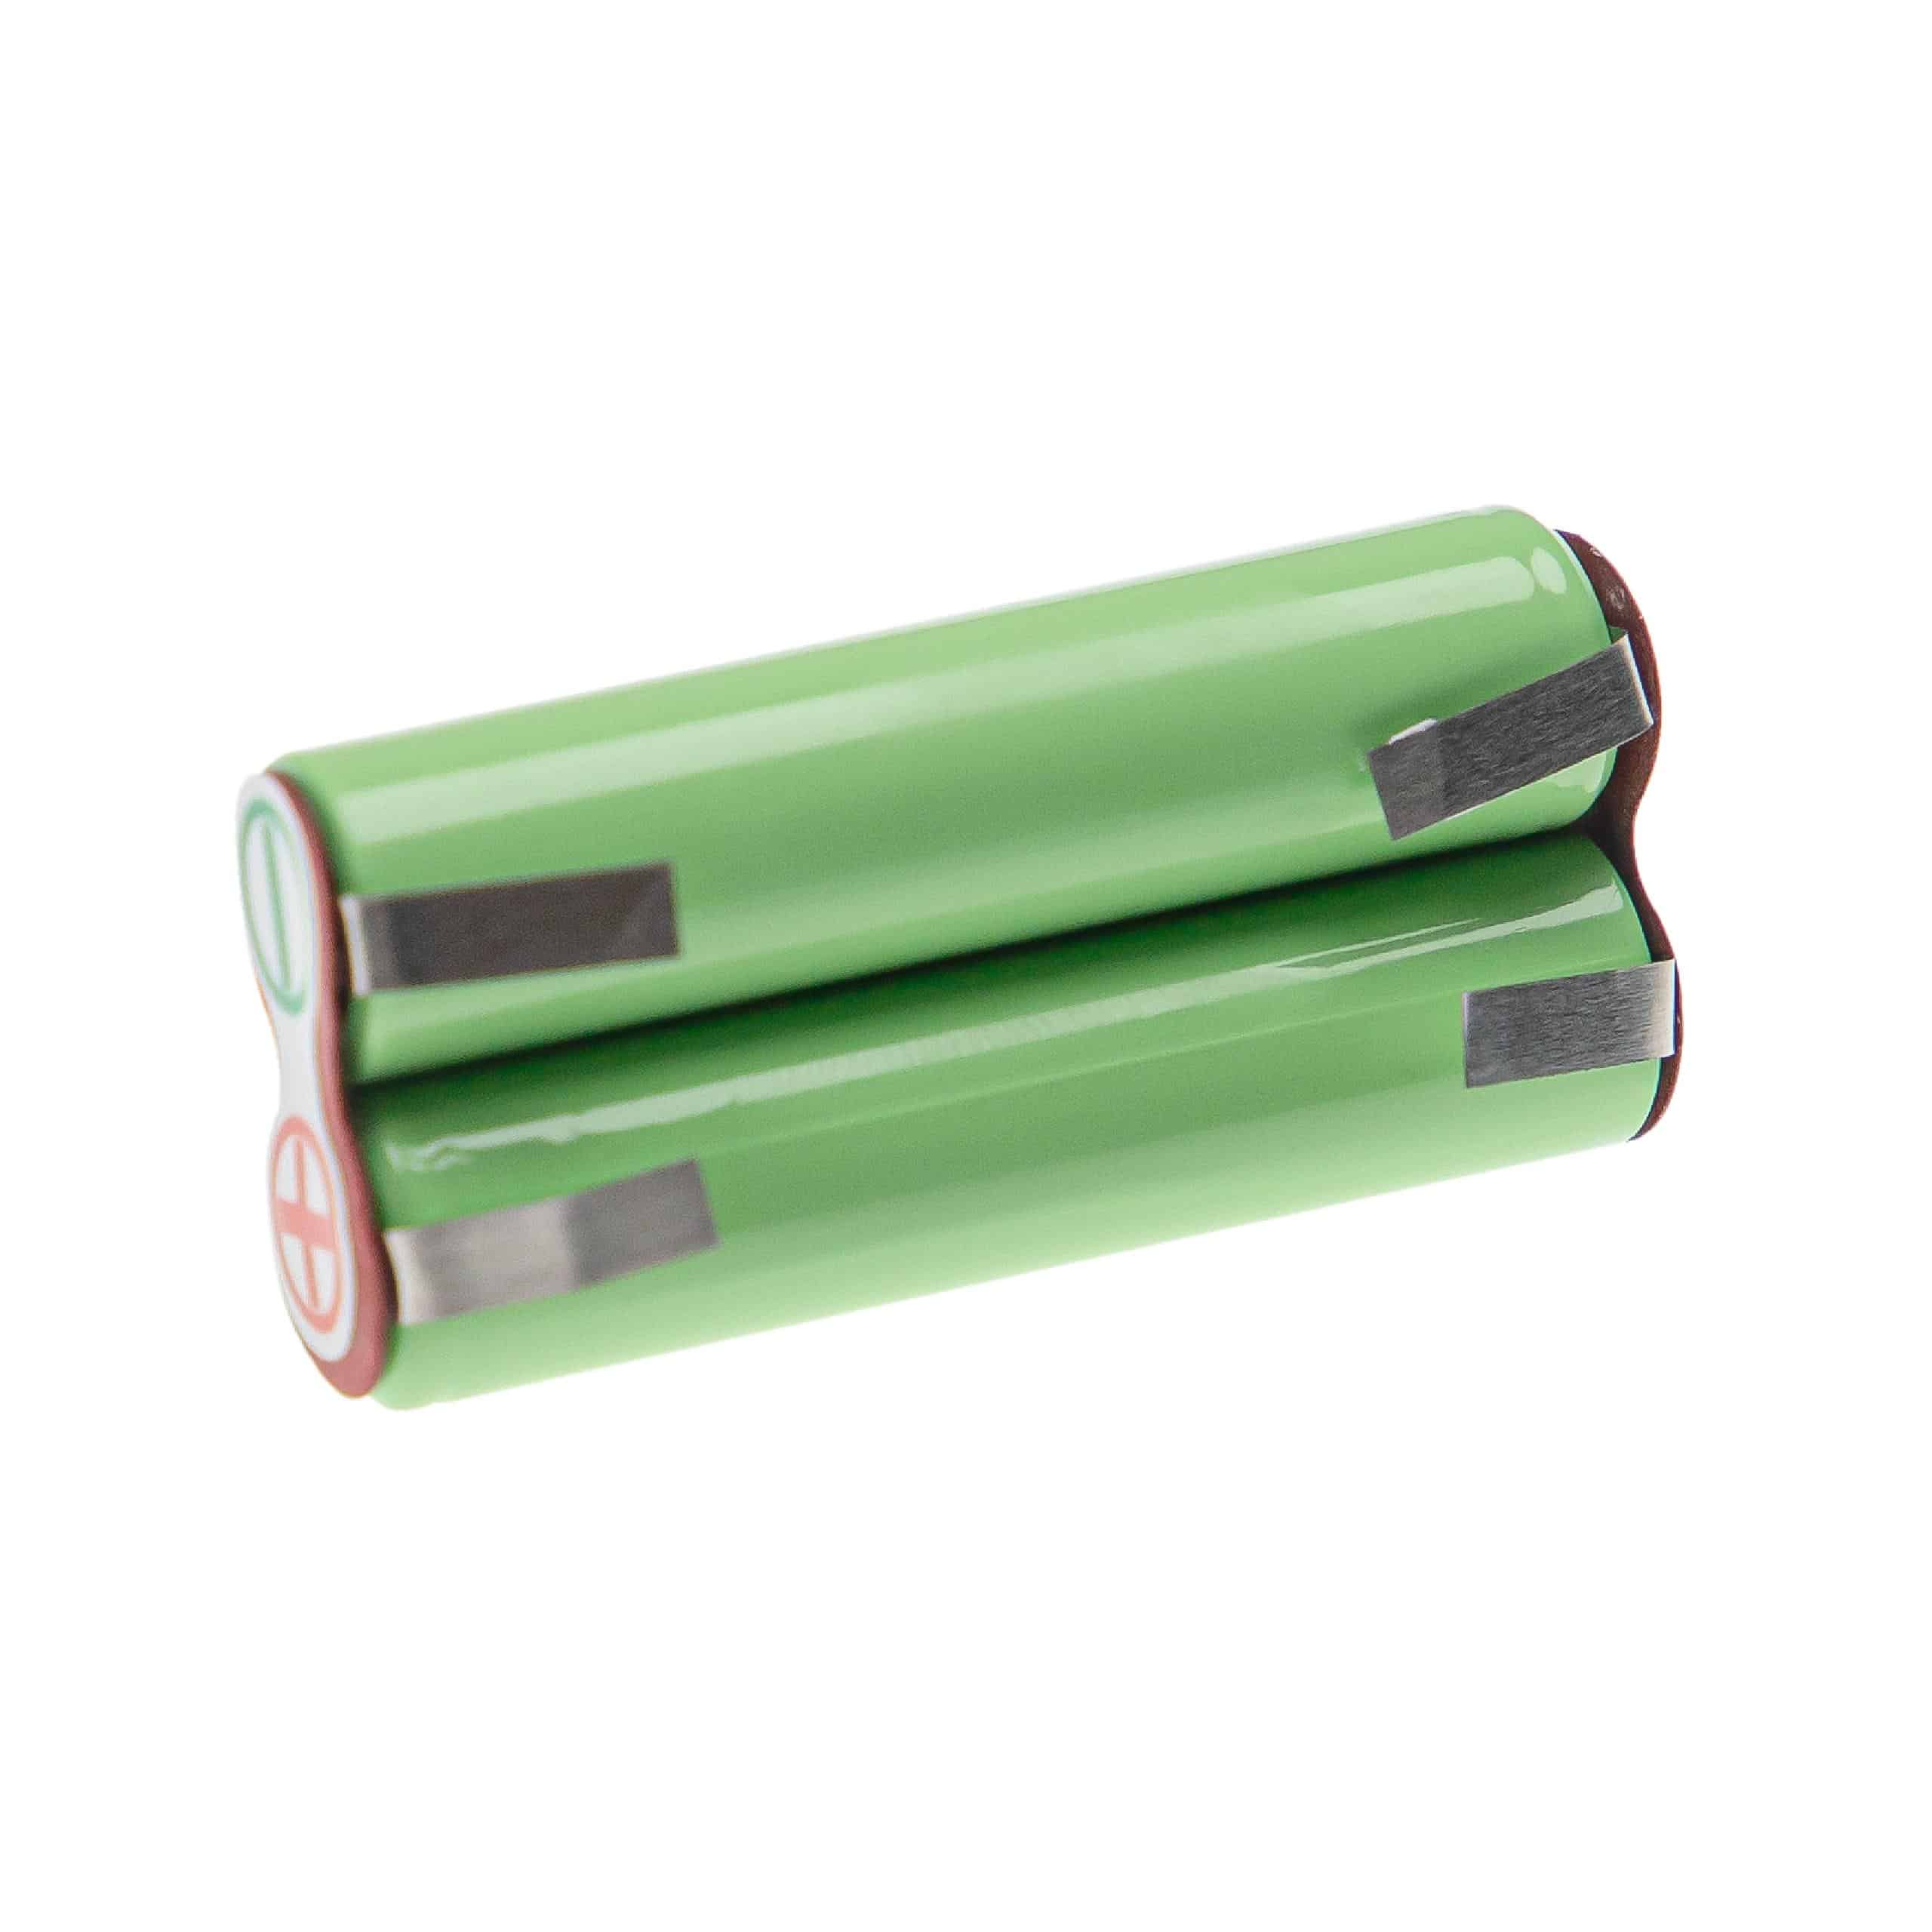 Batterie remplace Braun Type 5417 pour rasoir électrique - 950mAh 2,4V NiMH